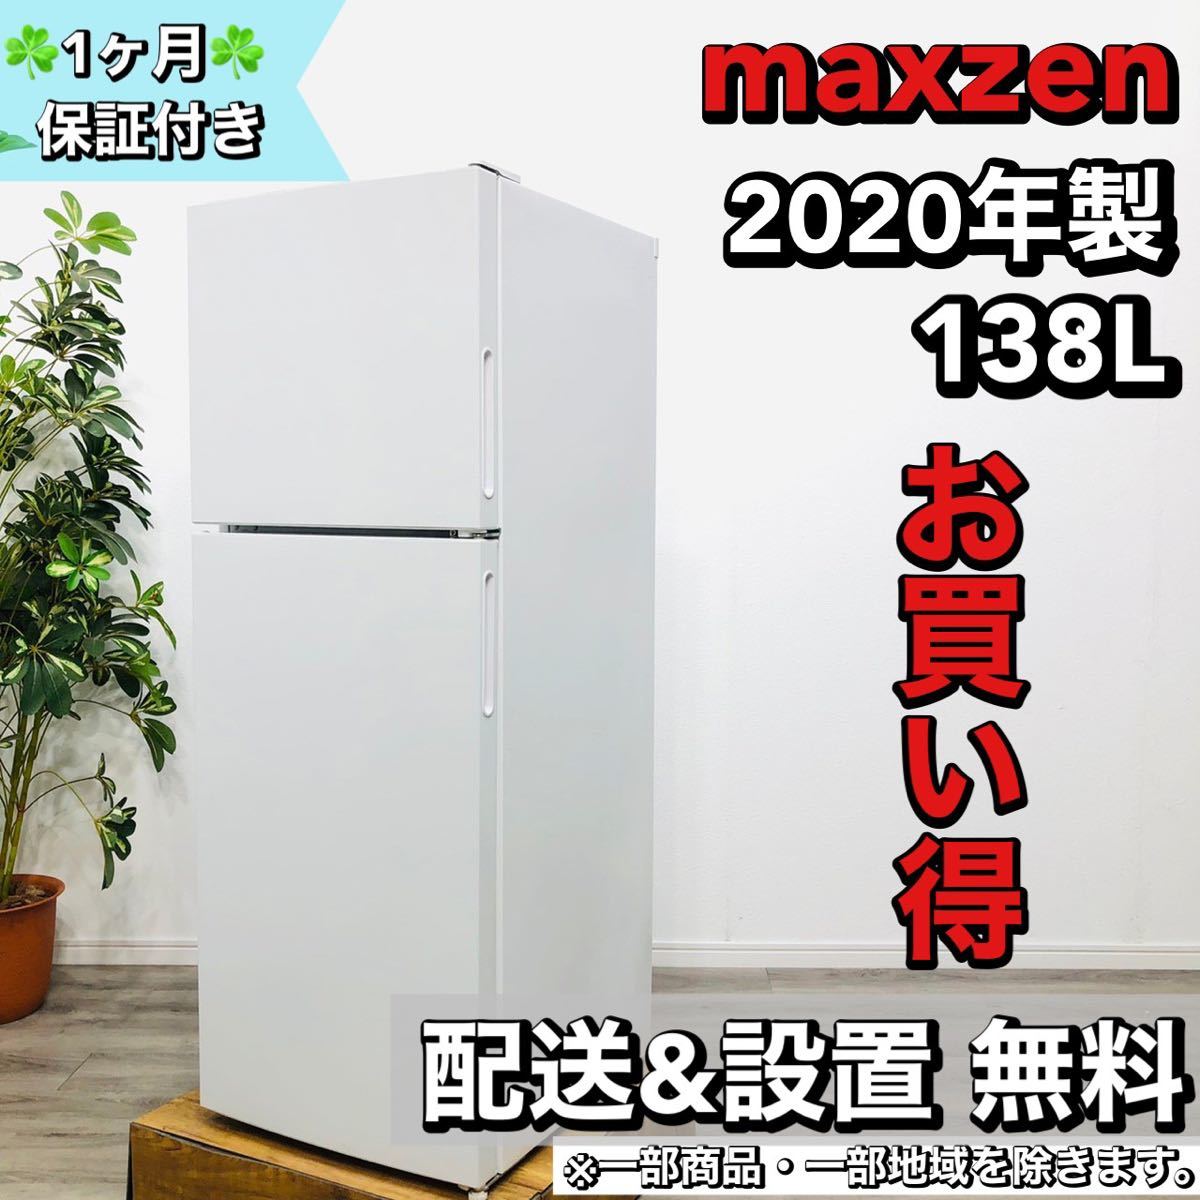 レビュー高評価のおせち贈り物 maxzen a1644 2ドア冷蔵庫 138L 2020年